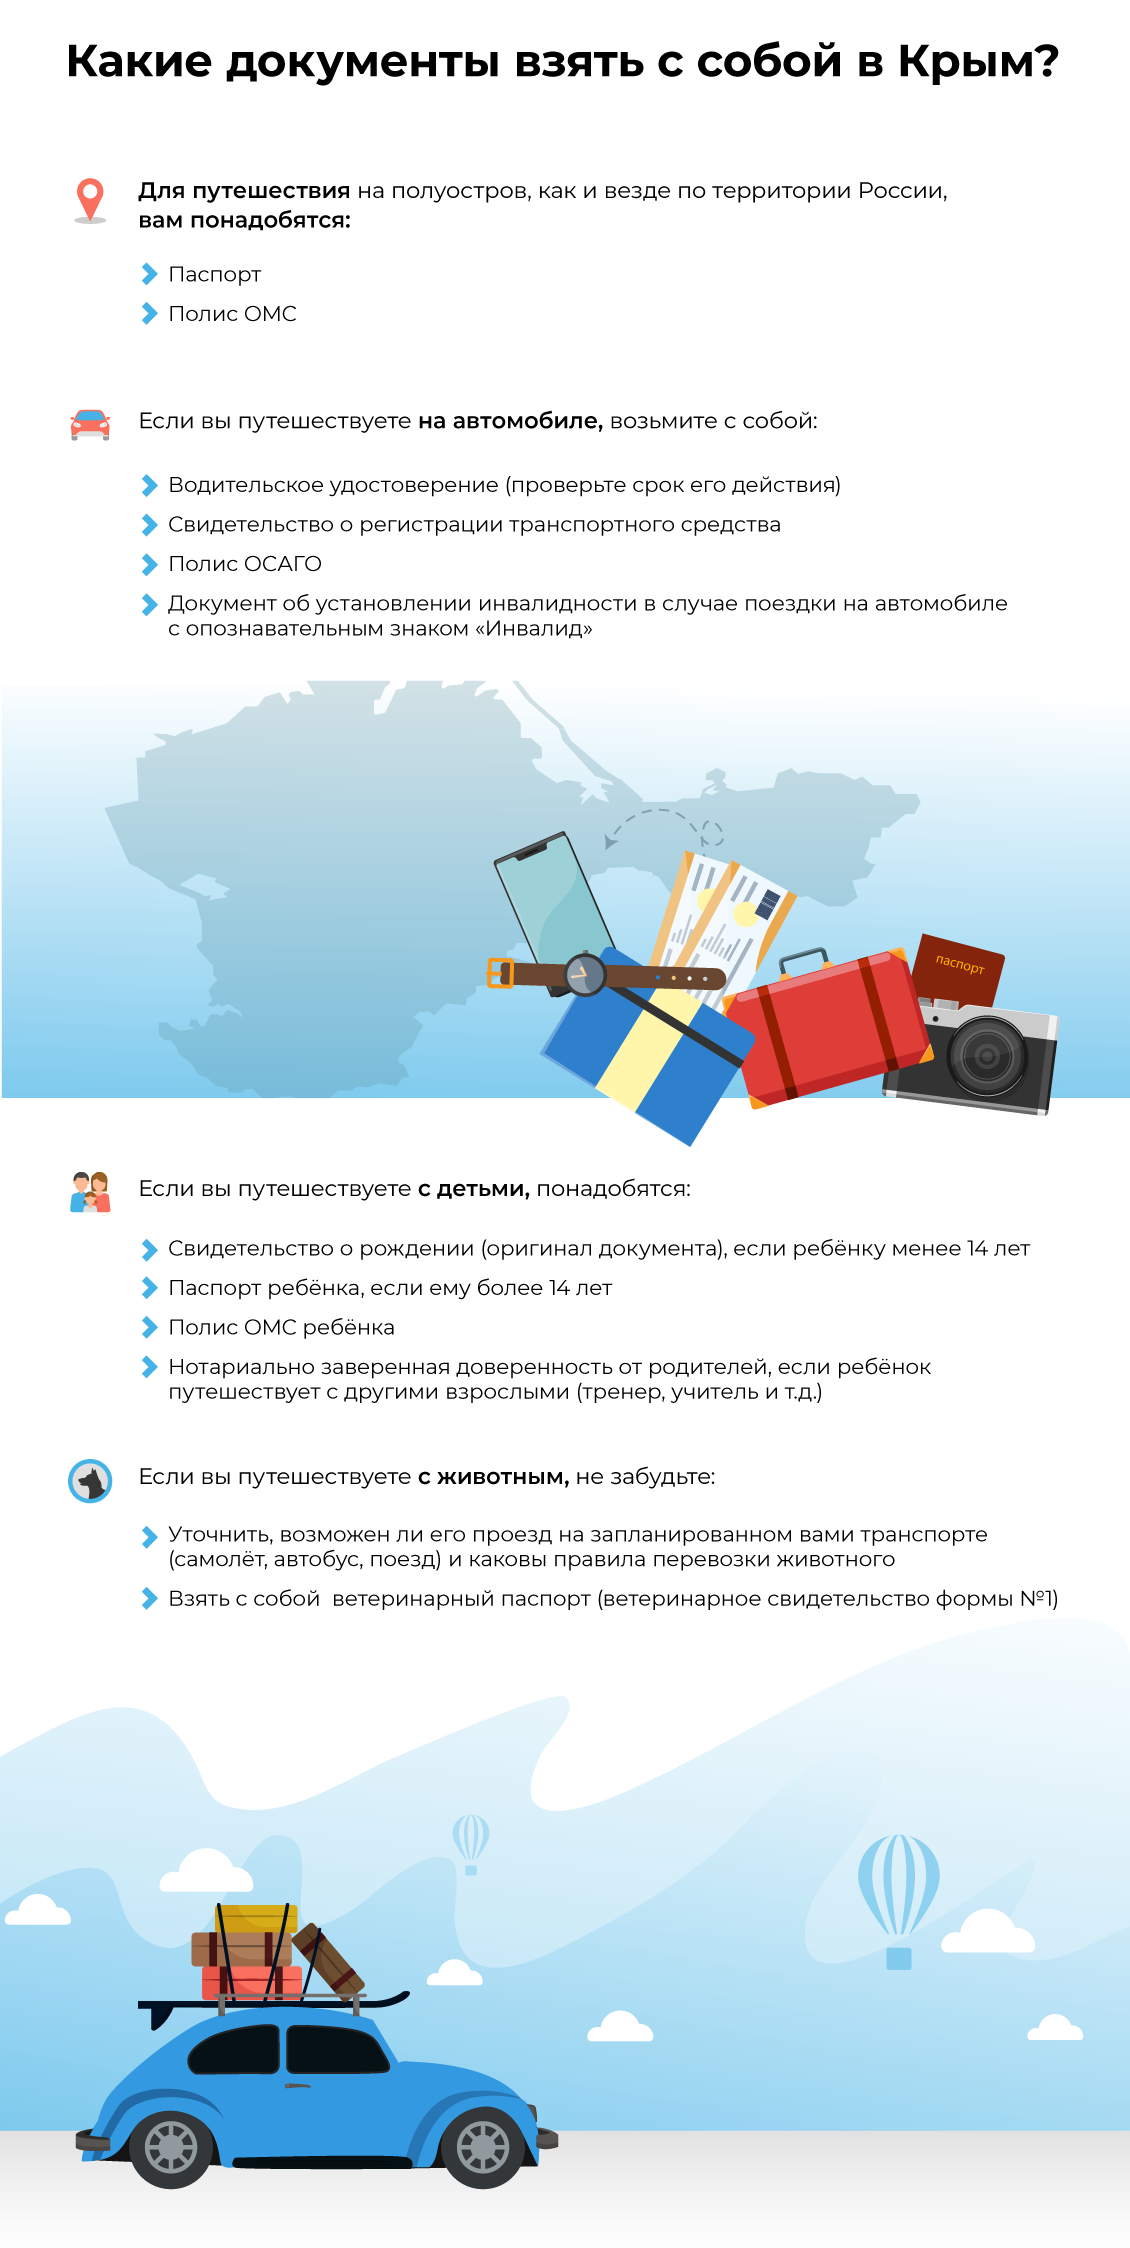 Какие документы взять с собой в Крым?